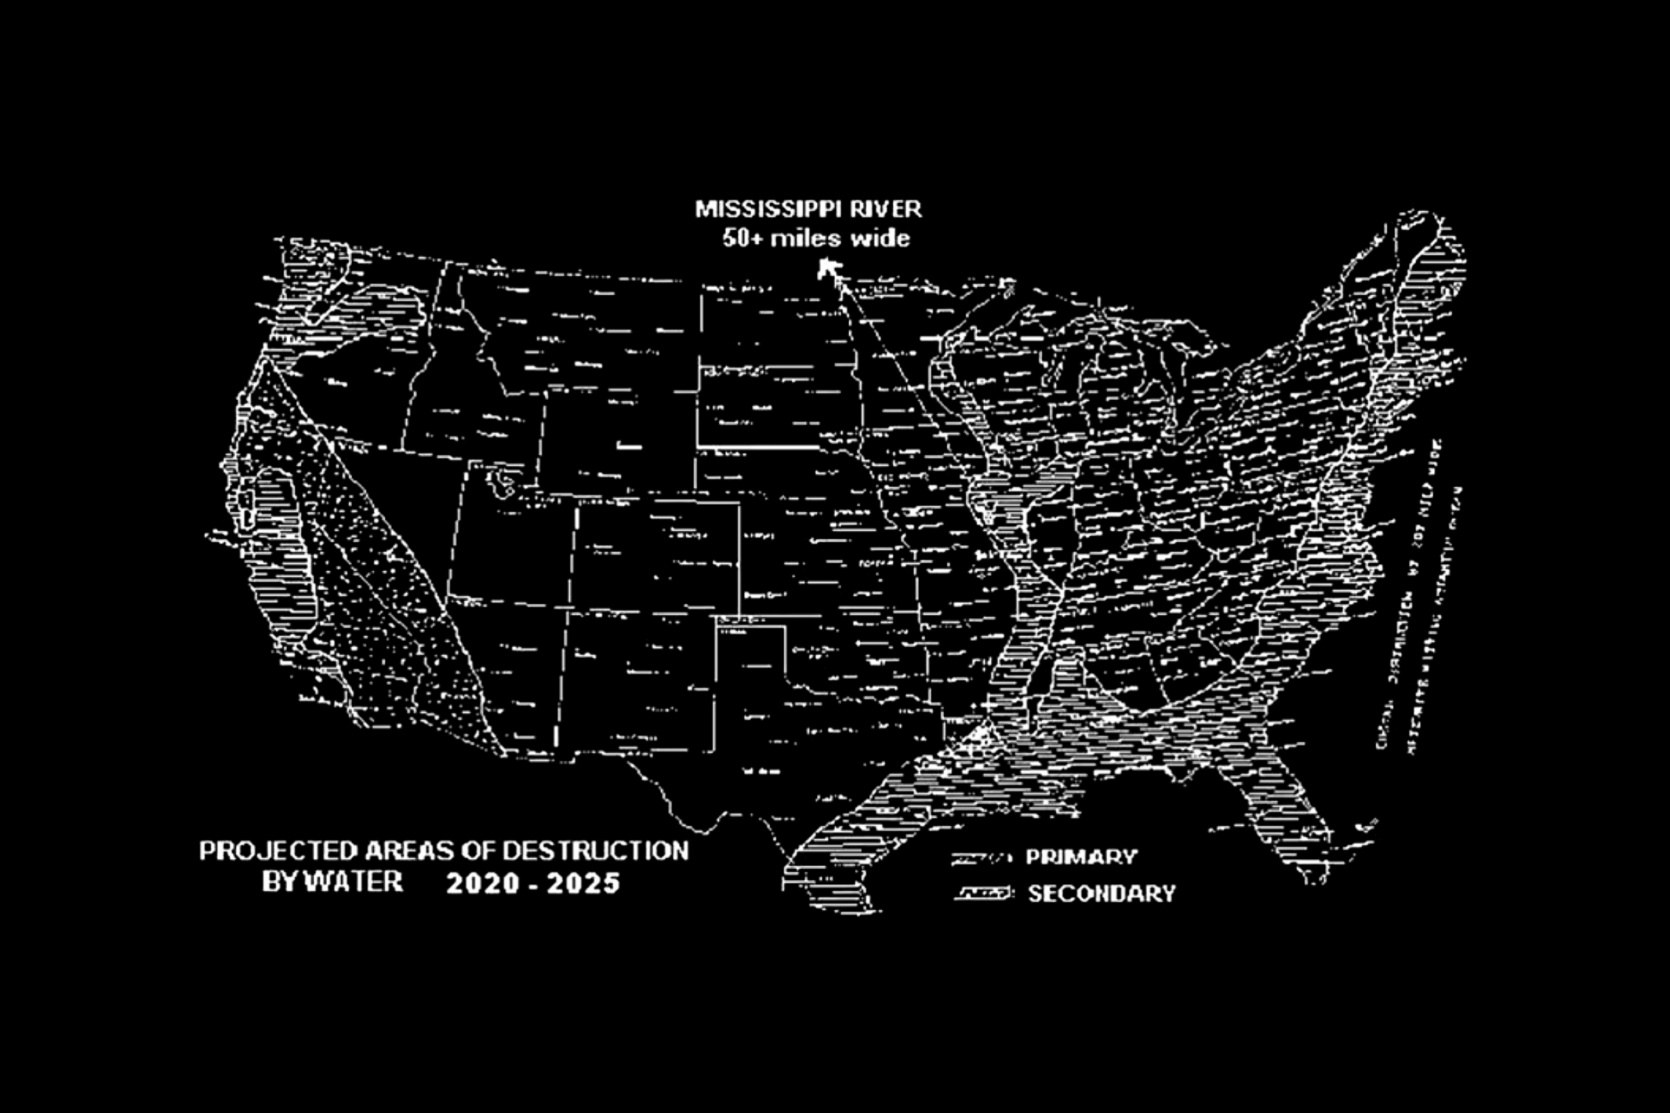 Al Bielek'in ABD'nin Gelecek Haritası